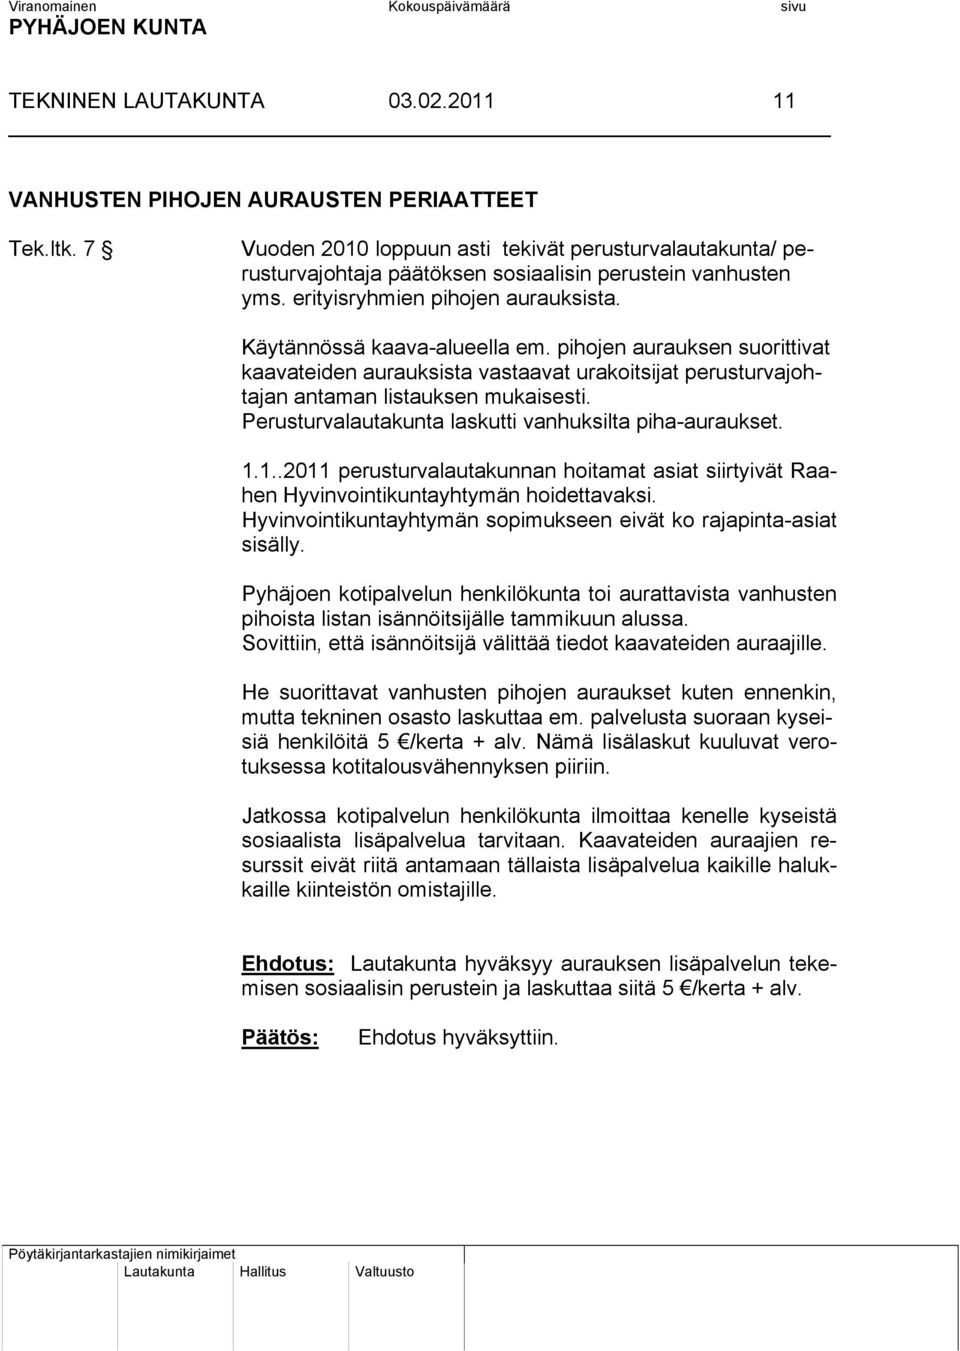 Perusturvalautakunta laskutti vanhuksilta piha-auraukset. 1.1..2011 perusturvalautakunnan hoitamat asiat siirtyivät Raahen Hyvinvointikuntayhtymän hoidettavaksi.